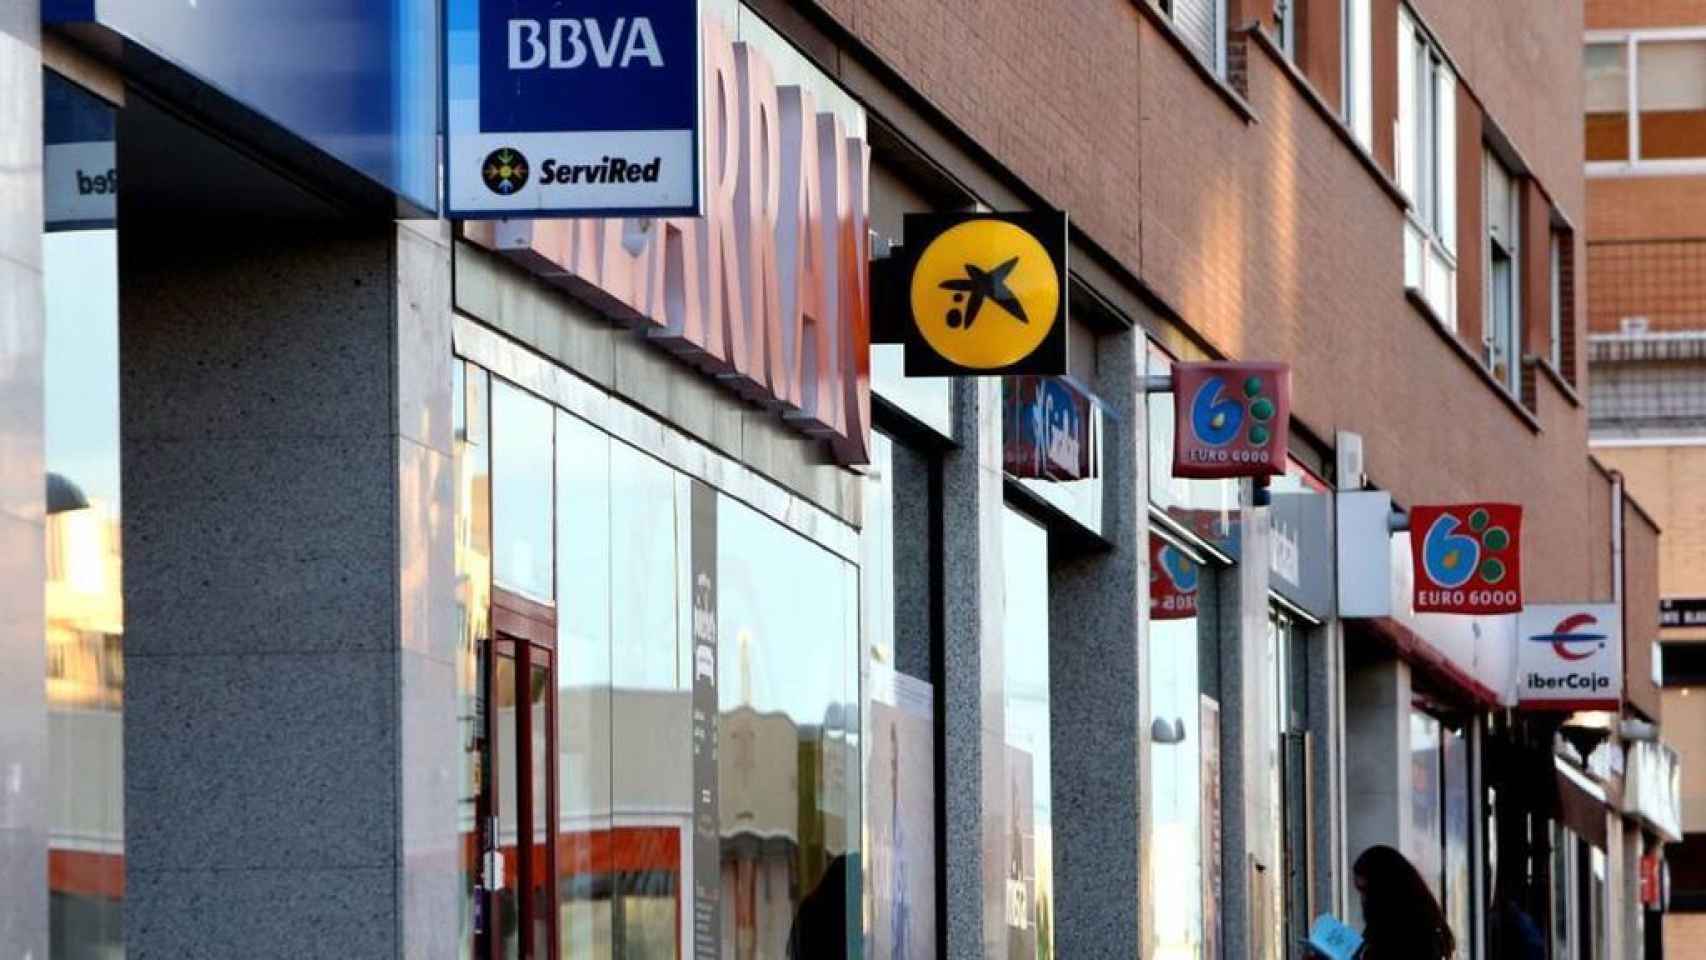 Oficinas bancarias en una misma calle.